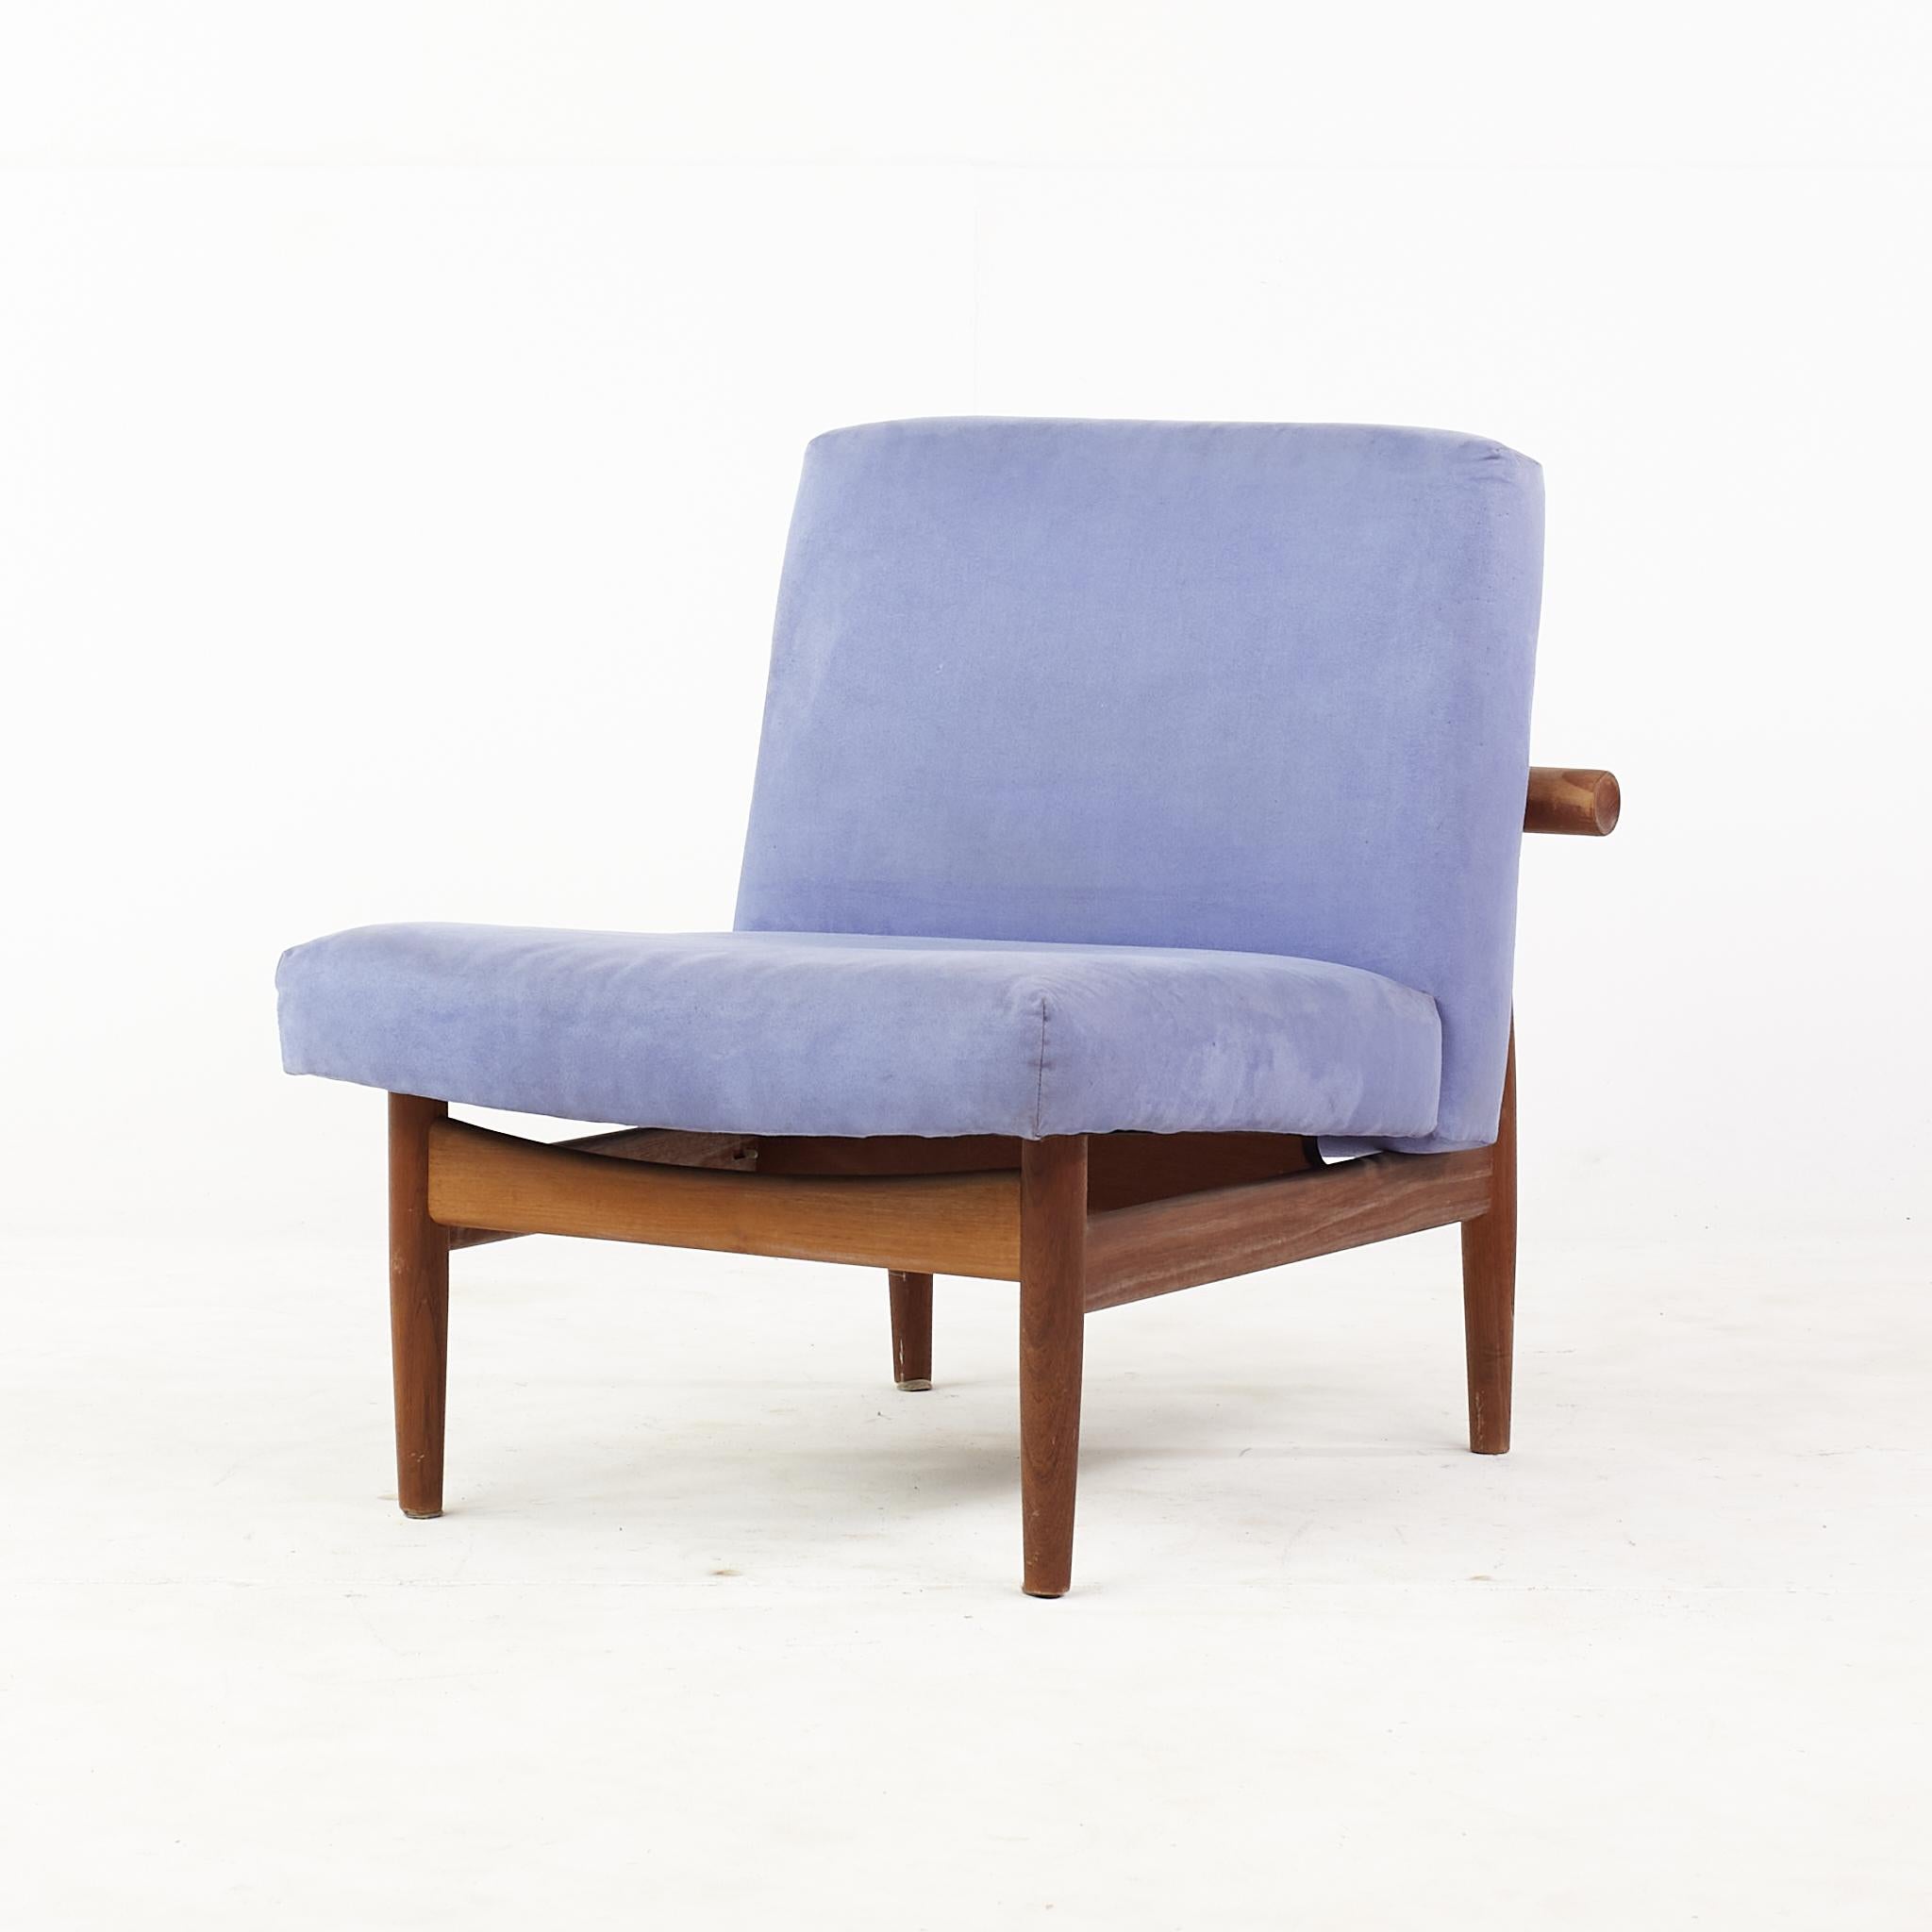 Finn Juhlmid century japan lounge chair

Dieser Stuhl misst: 26.5 breit x 33,5 tief x 28 Zoll hoch, mit einer Sitzhöhe/Stuhlabstand von 15,75 Zoll

Alle Möbelstücke sind in einem so genannten restaurierten Vintage-Zustand zu haben. Das bedeutet,